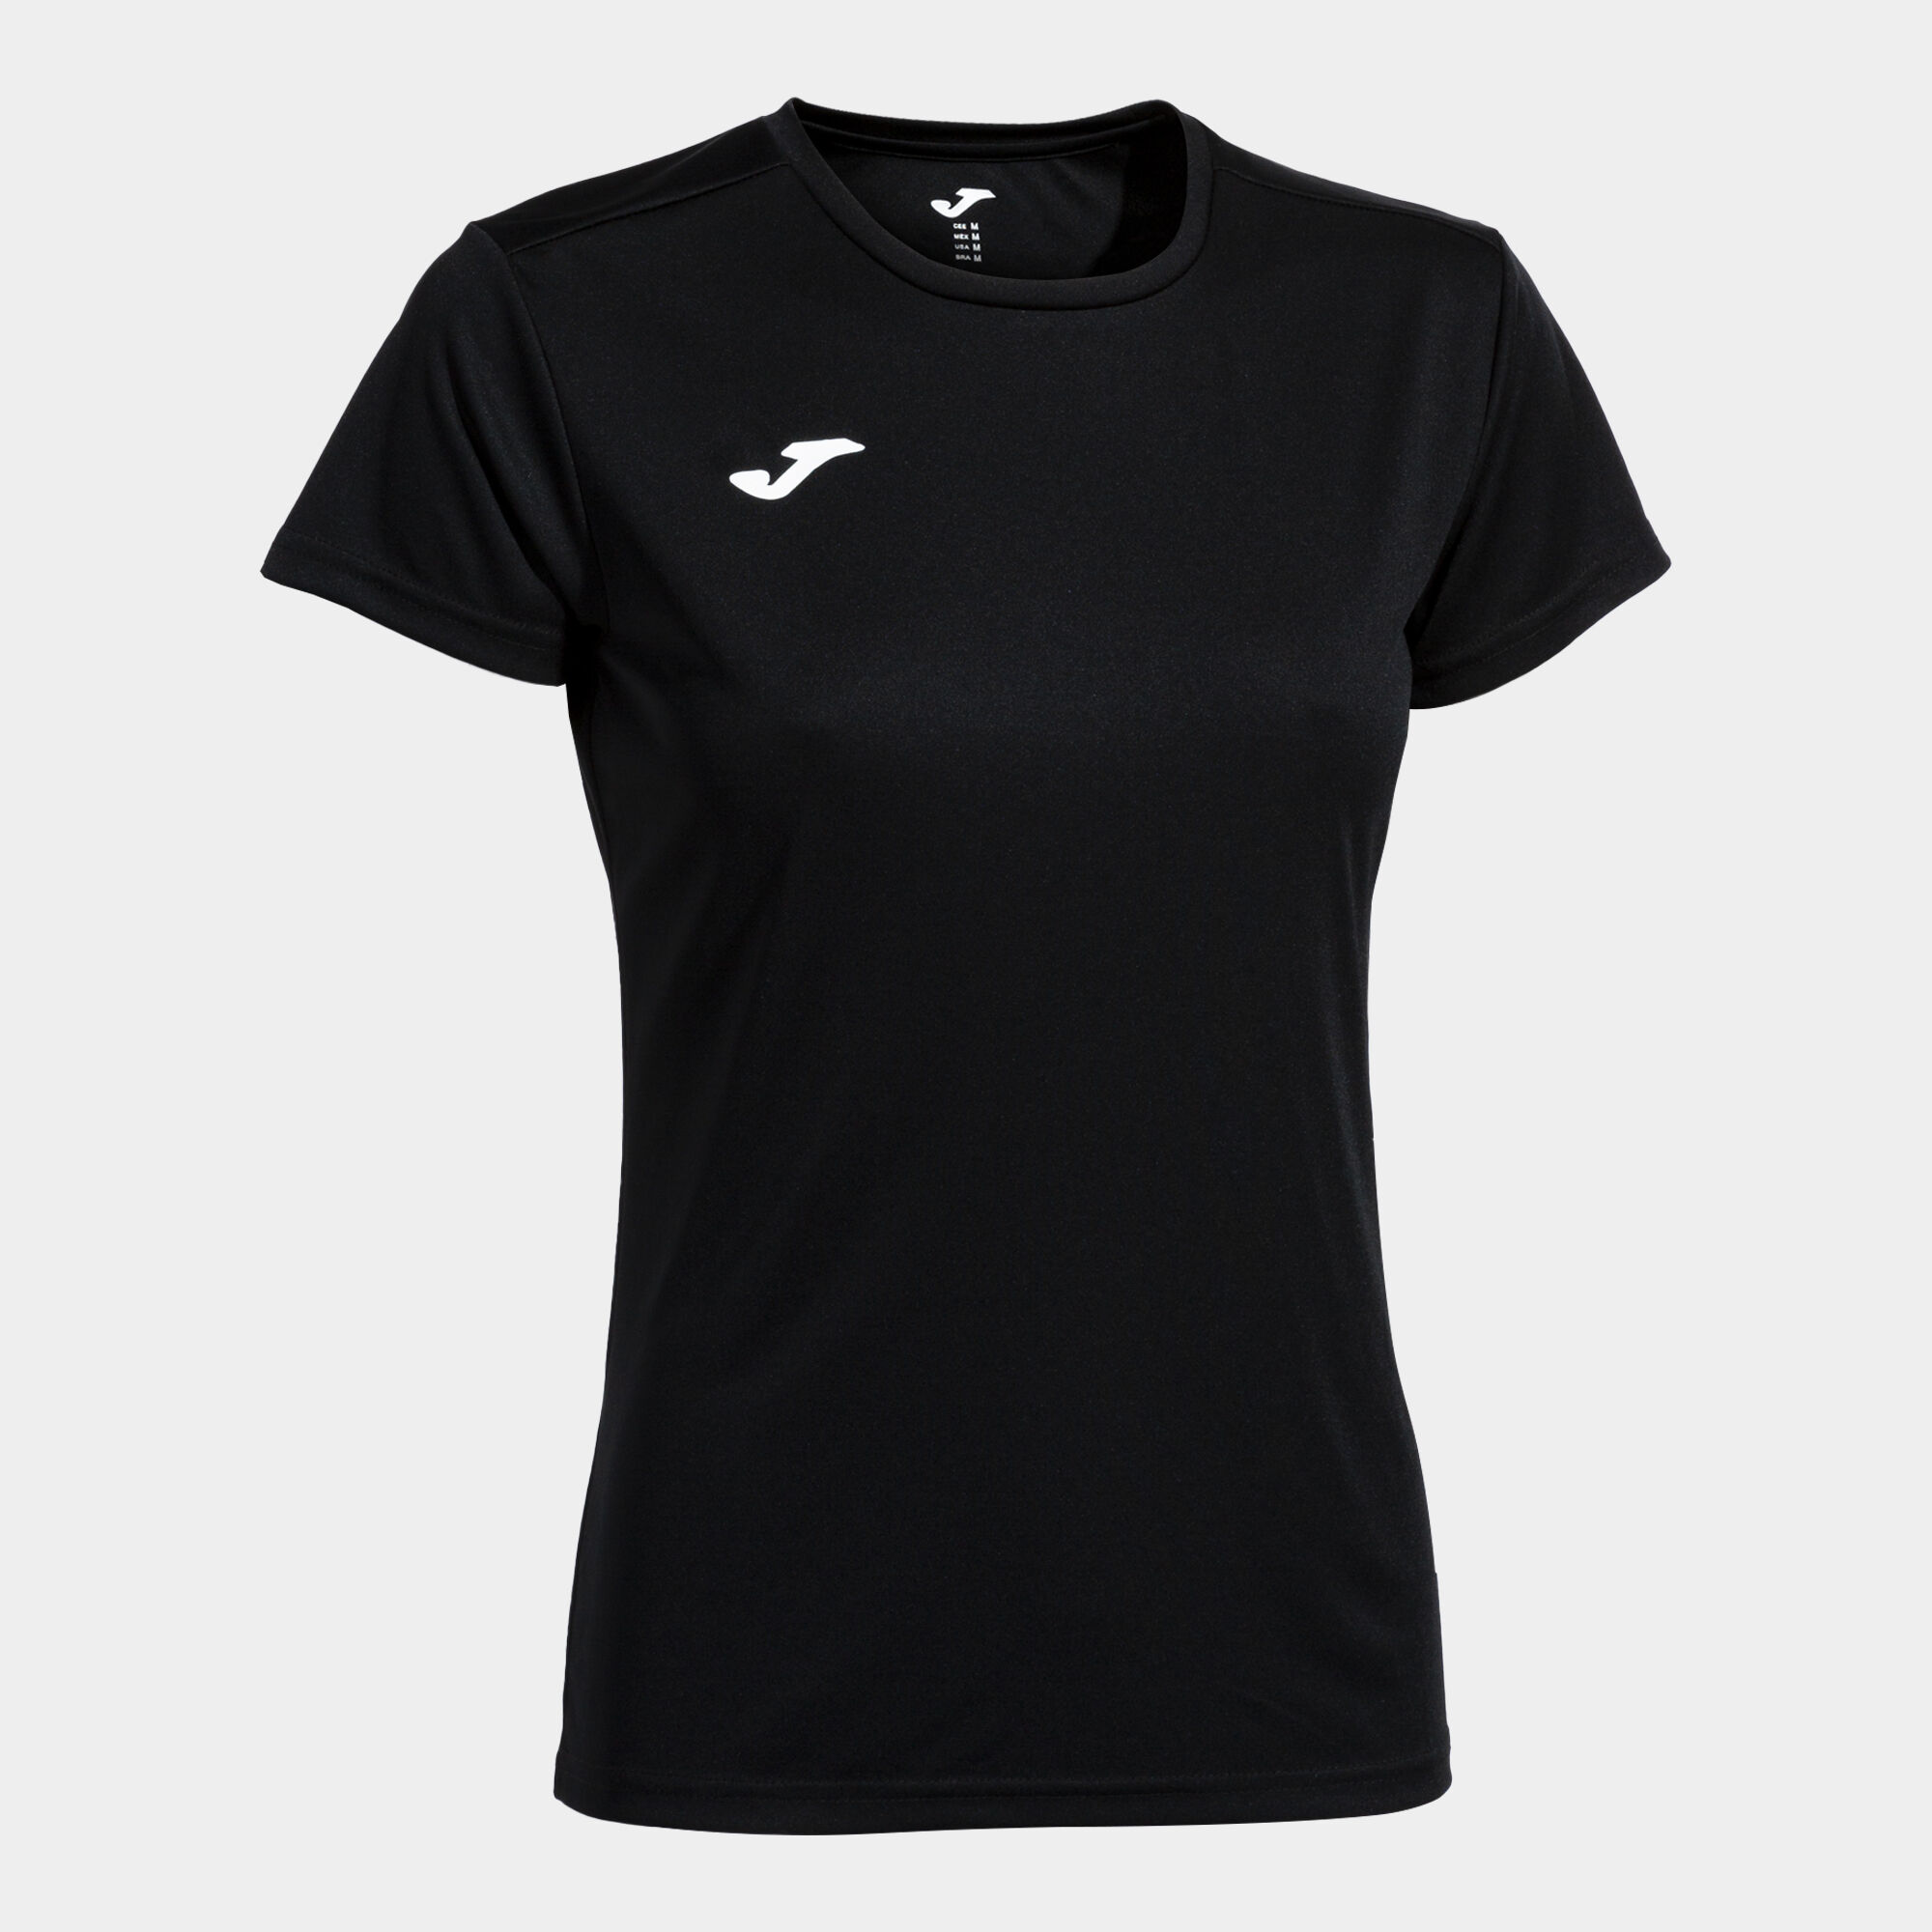 Comprar Camiseta Negra Manga Corta Mujer - Camisetas y Polos